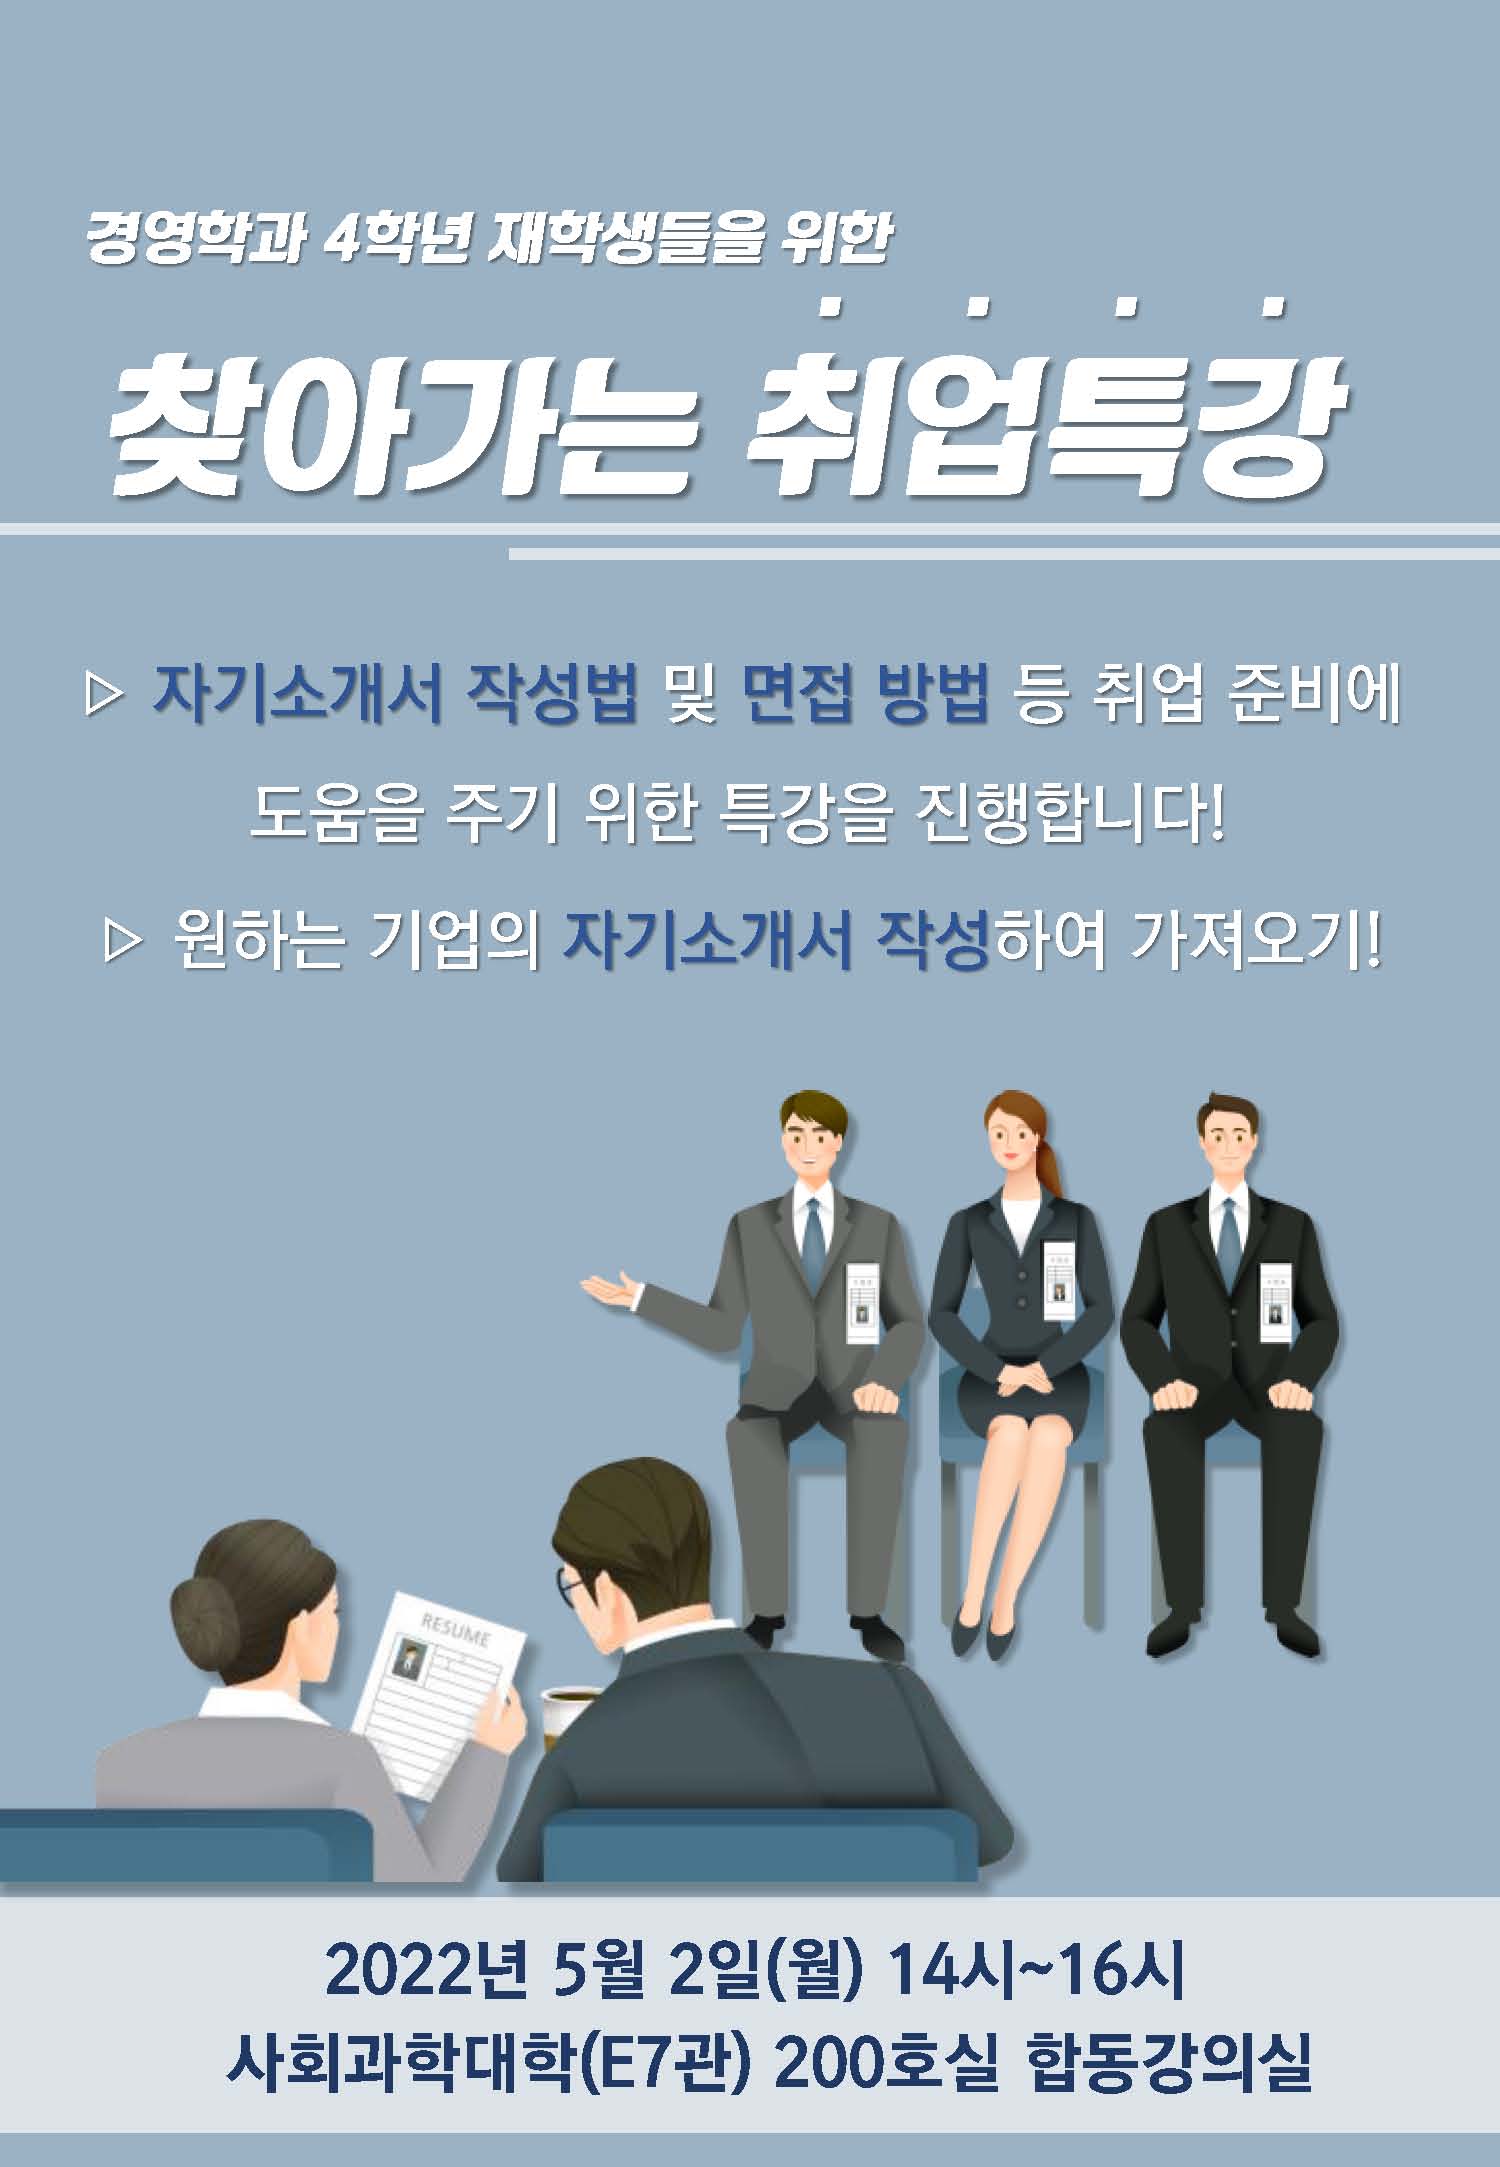 경영학과 4학년 대상 취업특강 진행! 상세정보 페이지로 이동하기